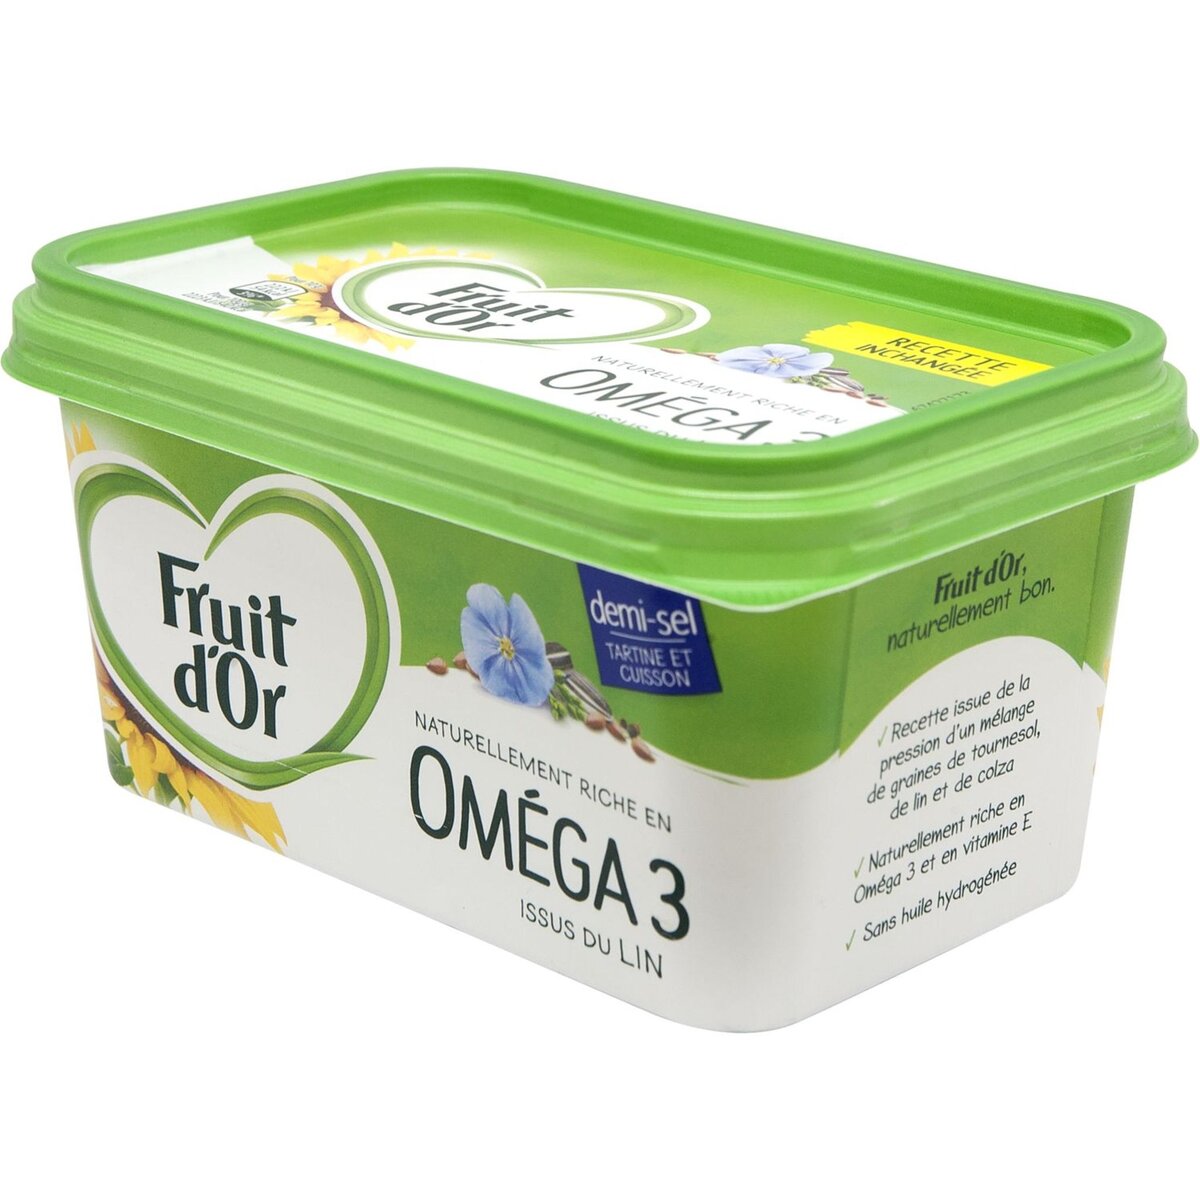 FRUIT D'OR Fruit d'Or oméga3 margarine demi-sel 510g